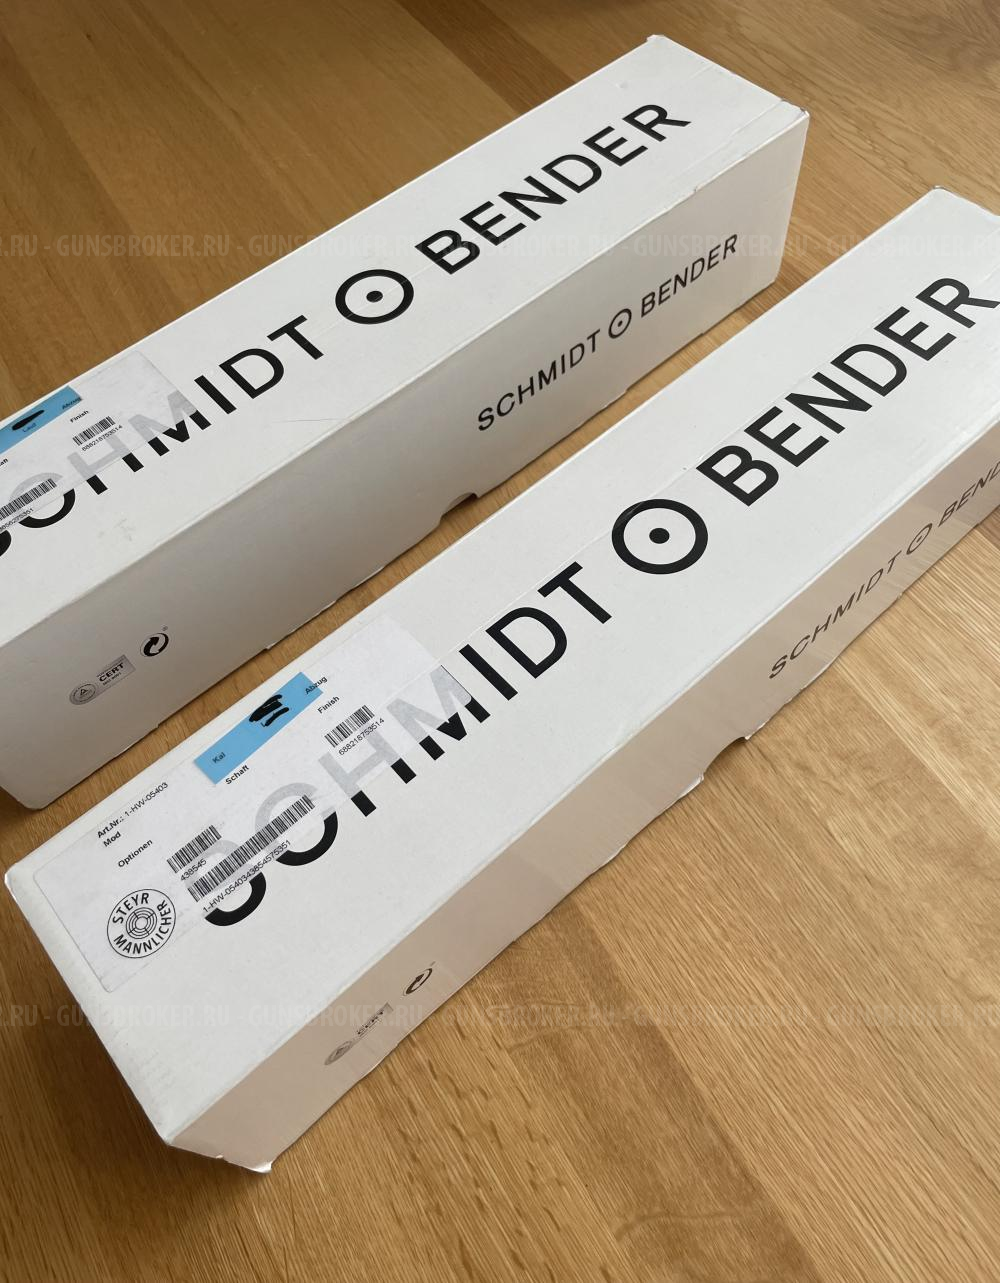 Новый SCHMIDT BENDER 5-25×56 PM || оптический прицел